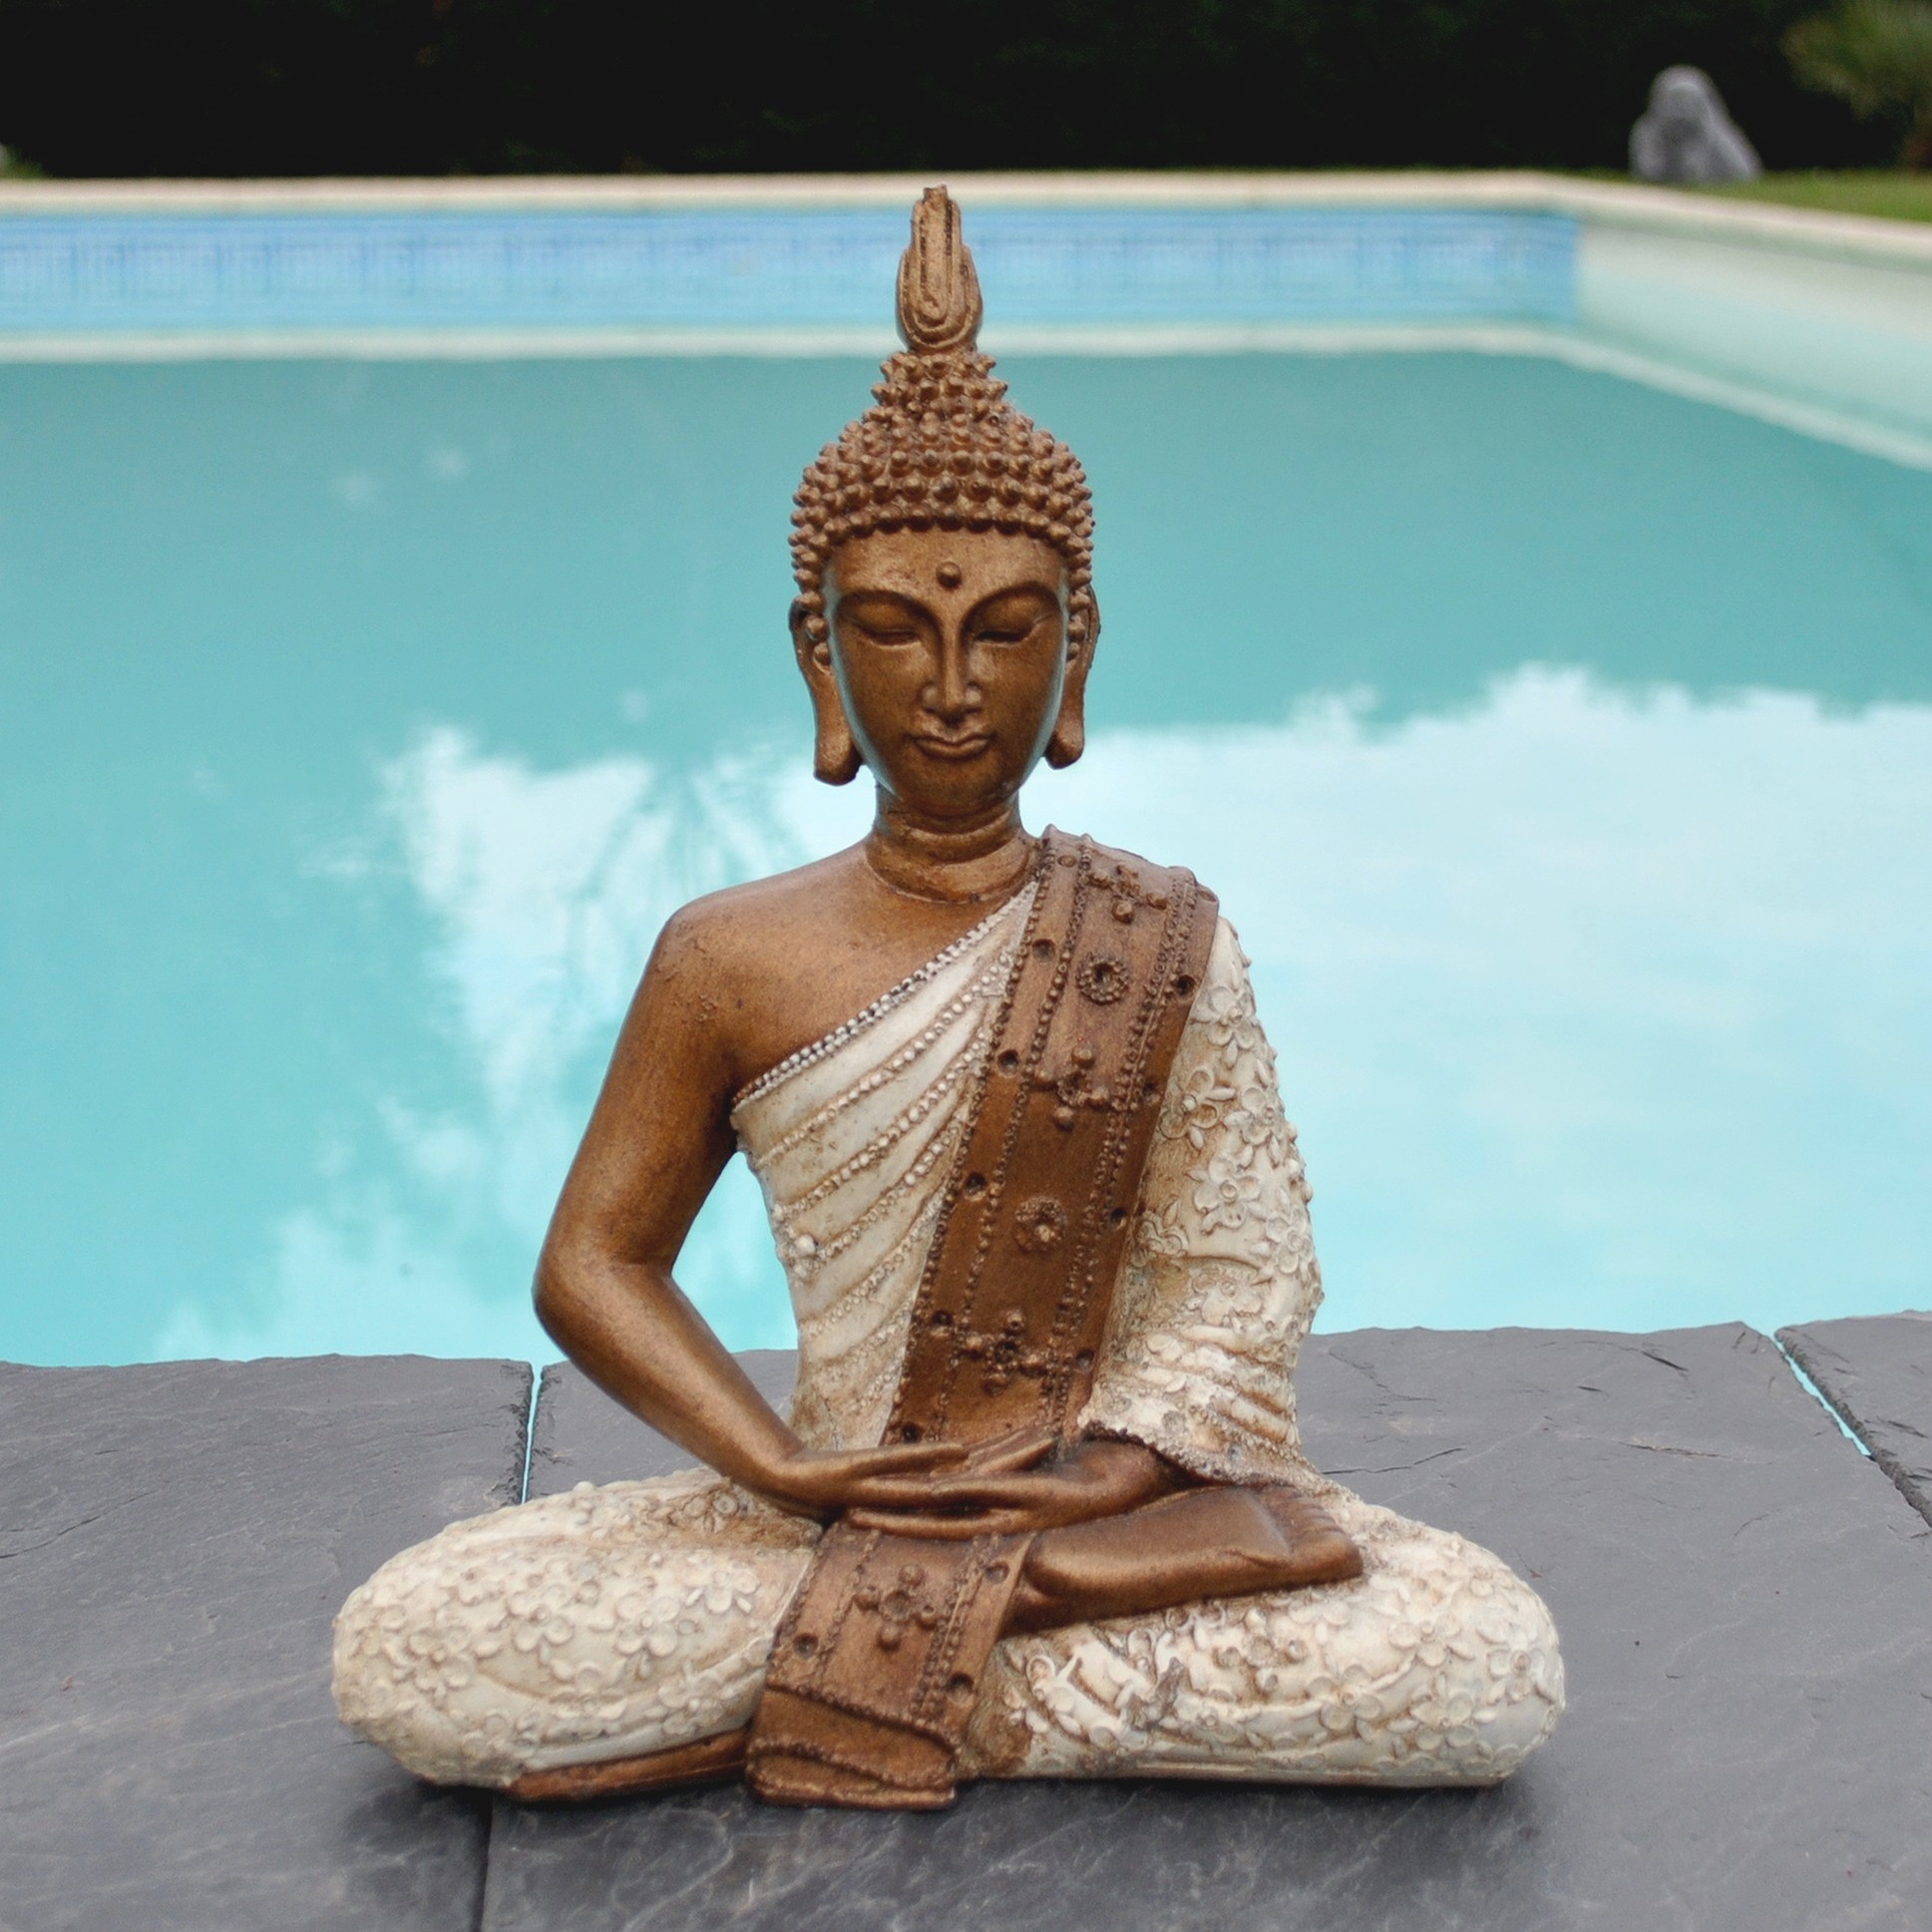 Statuette du Bouddha thaïlandais, couleurs crème et bronze.